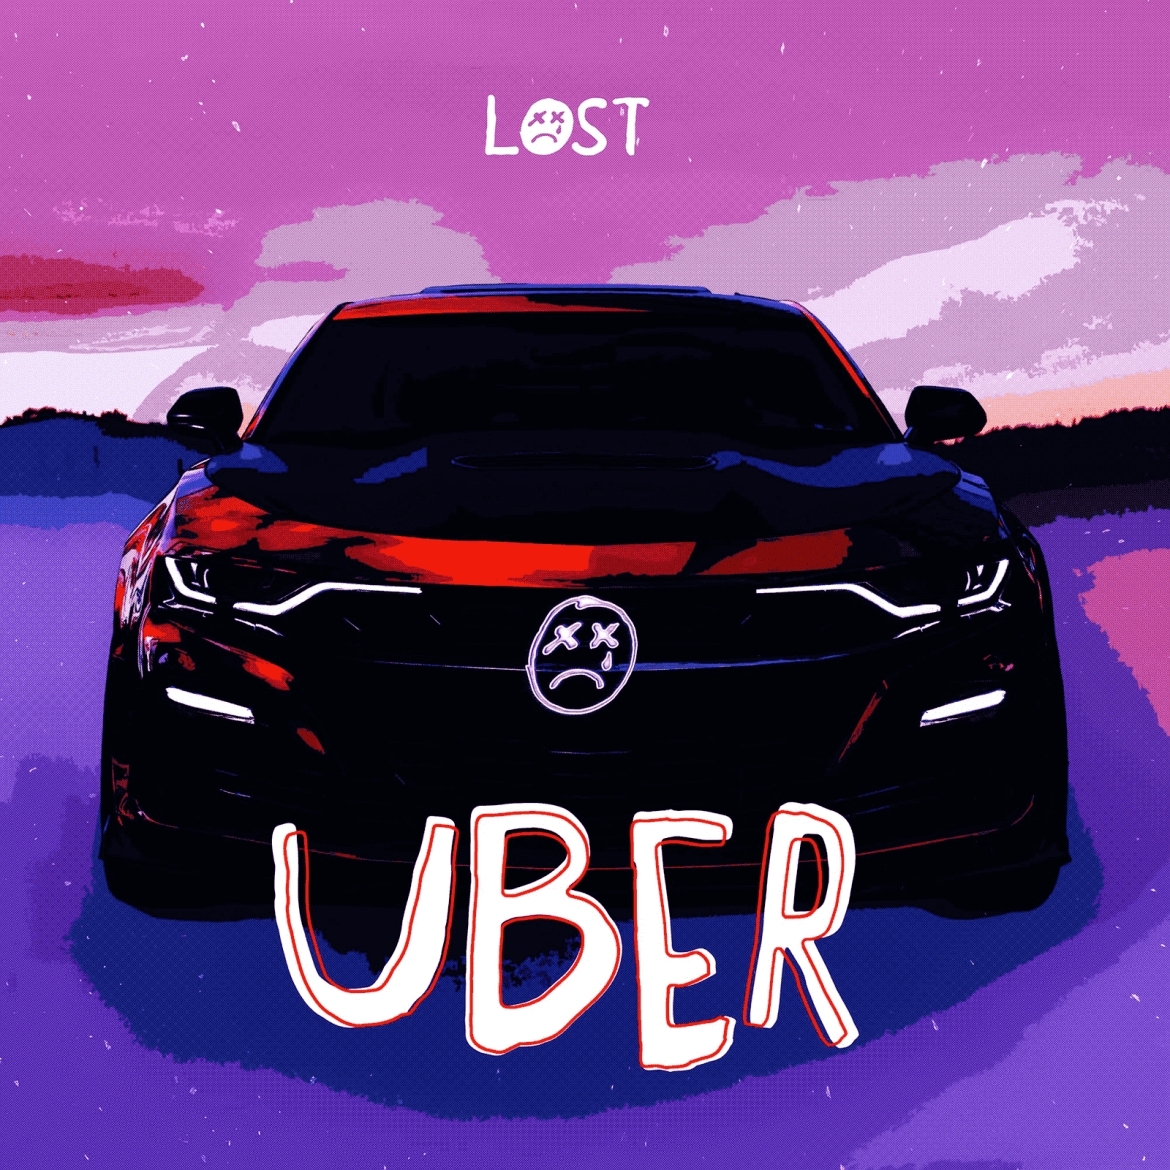 LOST - Uber (Meine Neuen Freunde Publ.), credits by Leon Hahn